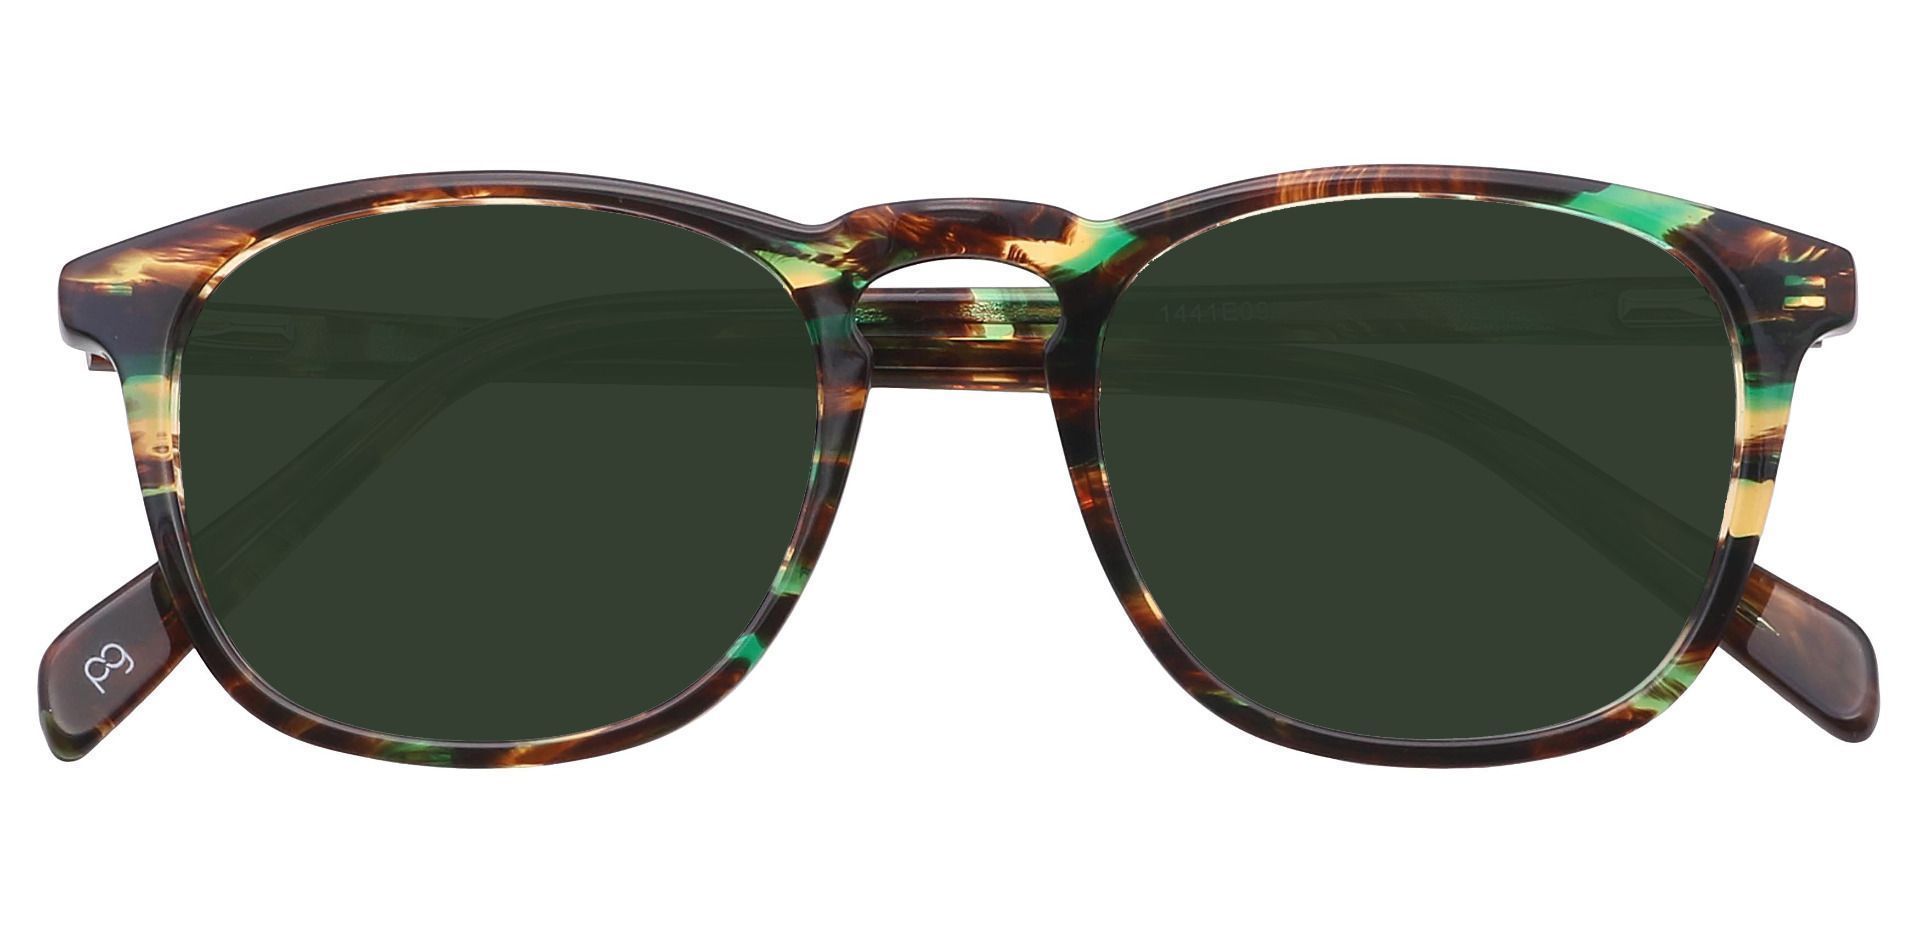 Venti Square Progressive Sunglasses - Green Frame With Green Lenses